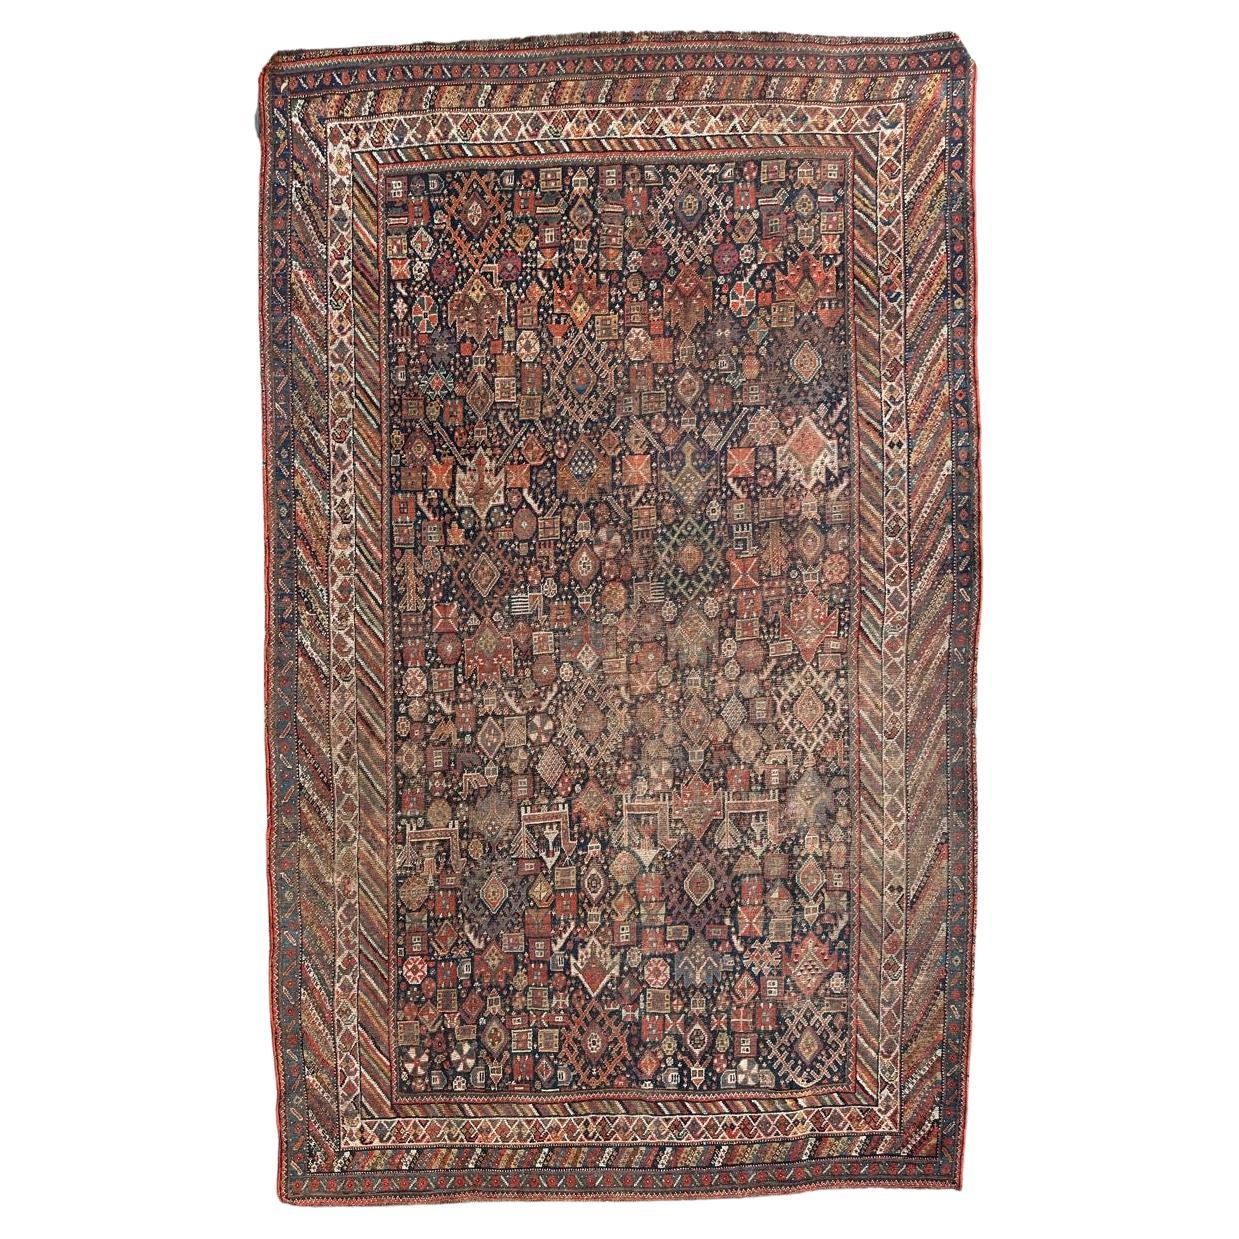 Bobyrug's Beautiful Antique Distressed Shiraz Rug (Tapis Shiraz antique vieilli)